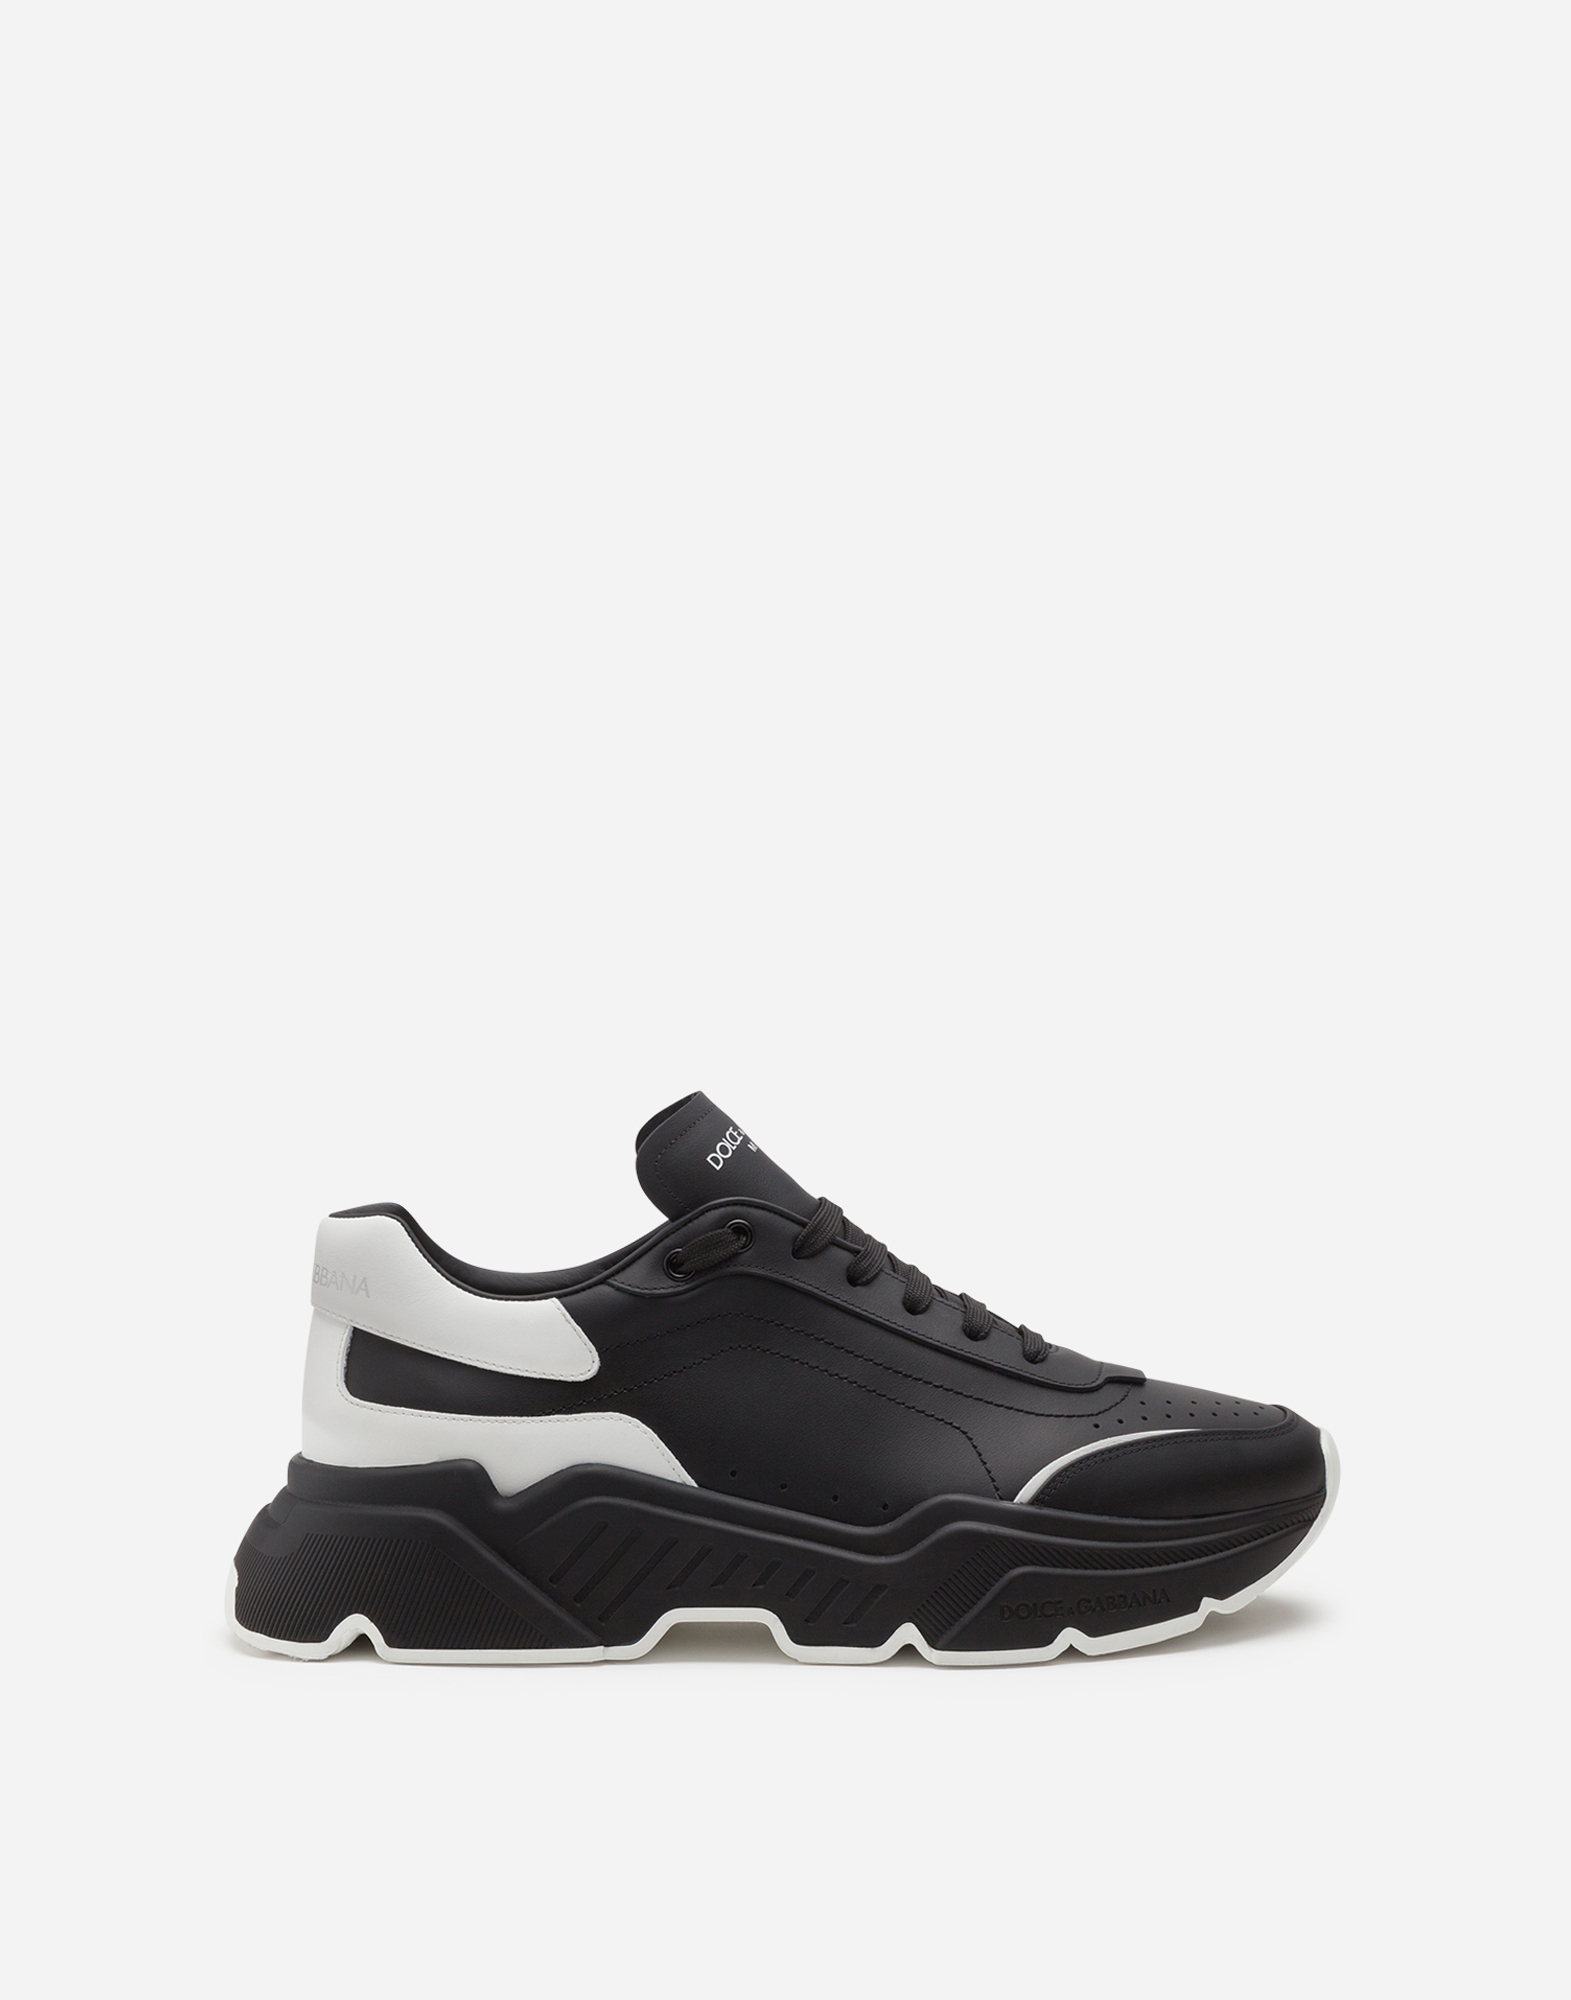 Daymaster sneakers in nappa calfskin in Black/White